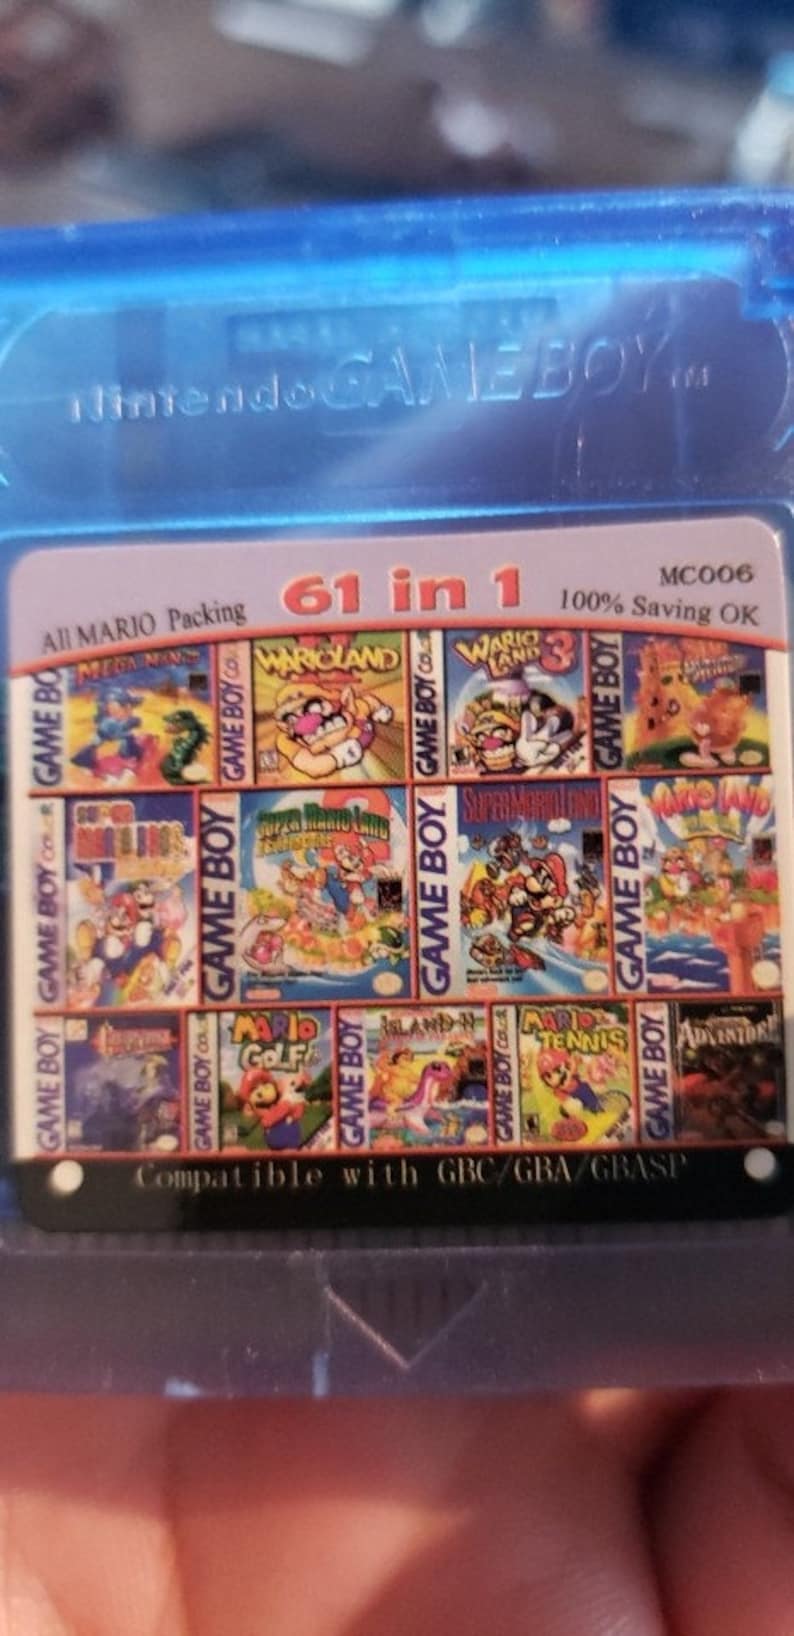 61 In 1 Nintendo Game Cartridge Gameboy Color English Language 16 Bit image 7